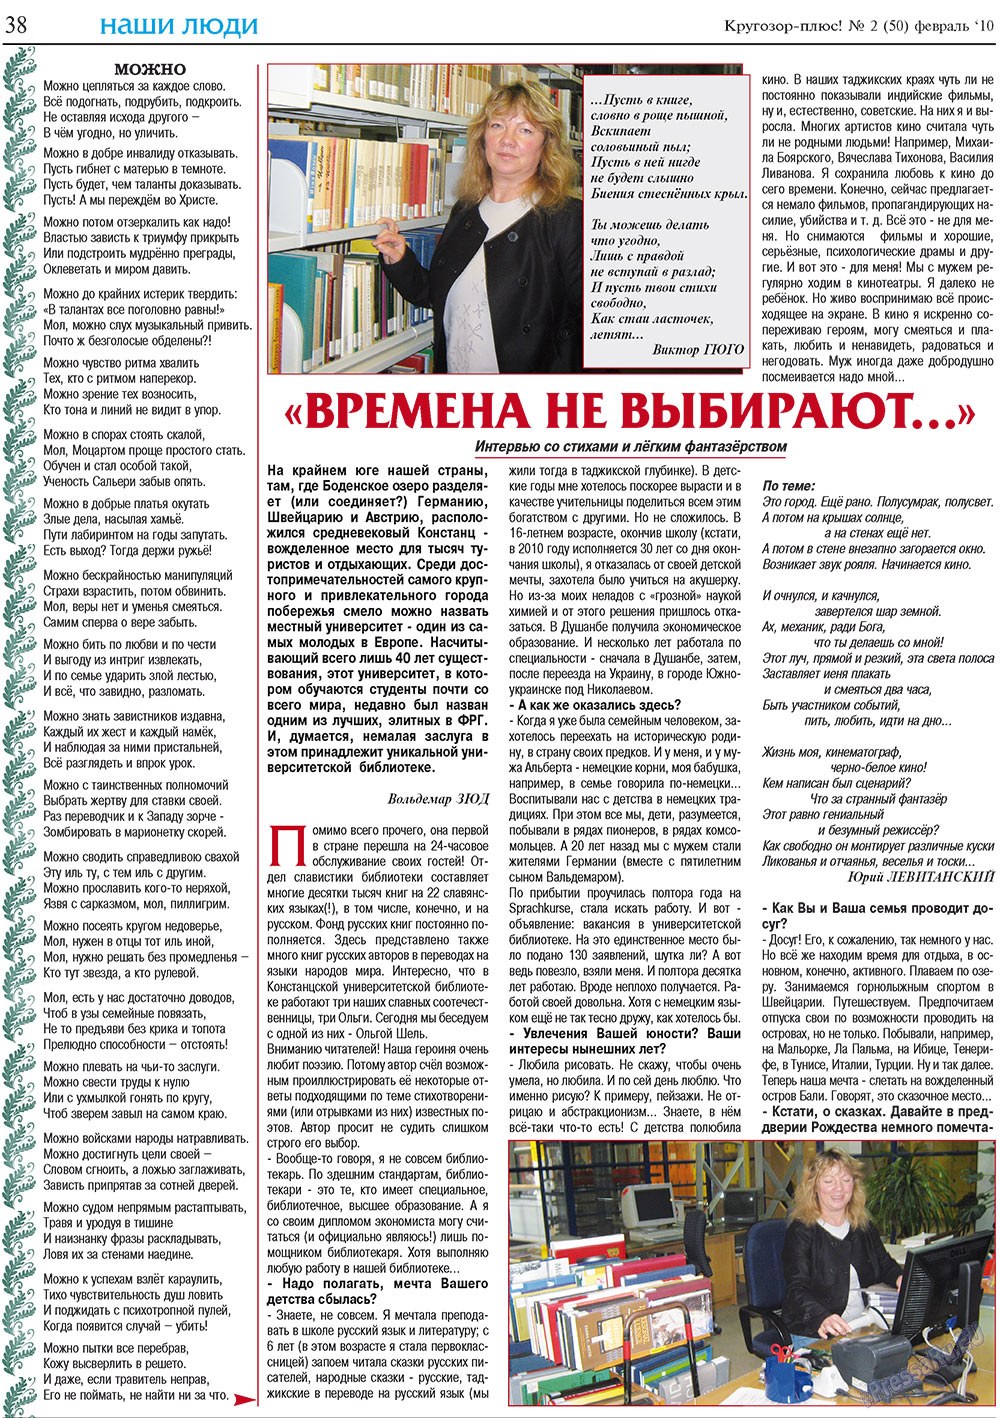 Кругозор плюс!, газета. 2010 №2 стр.38